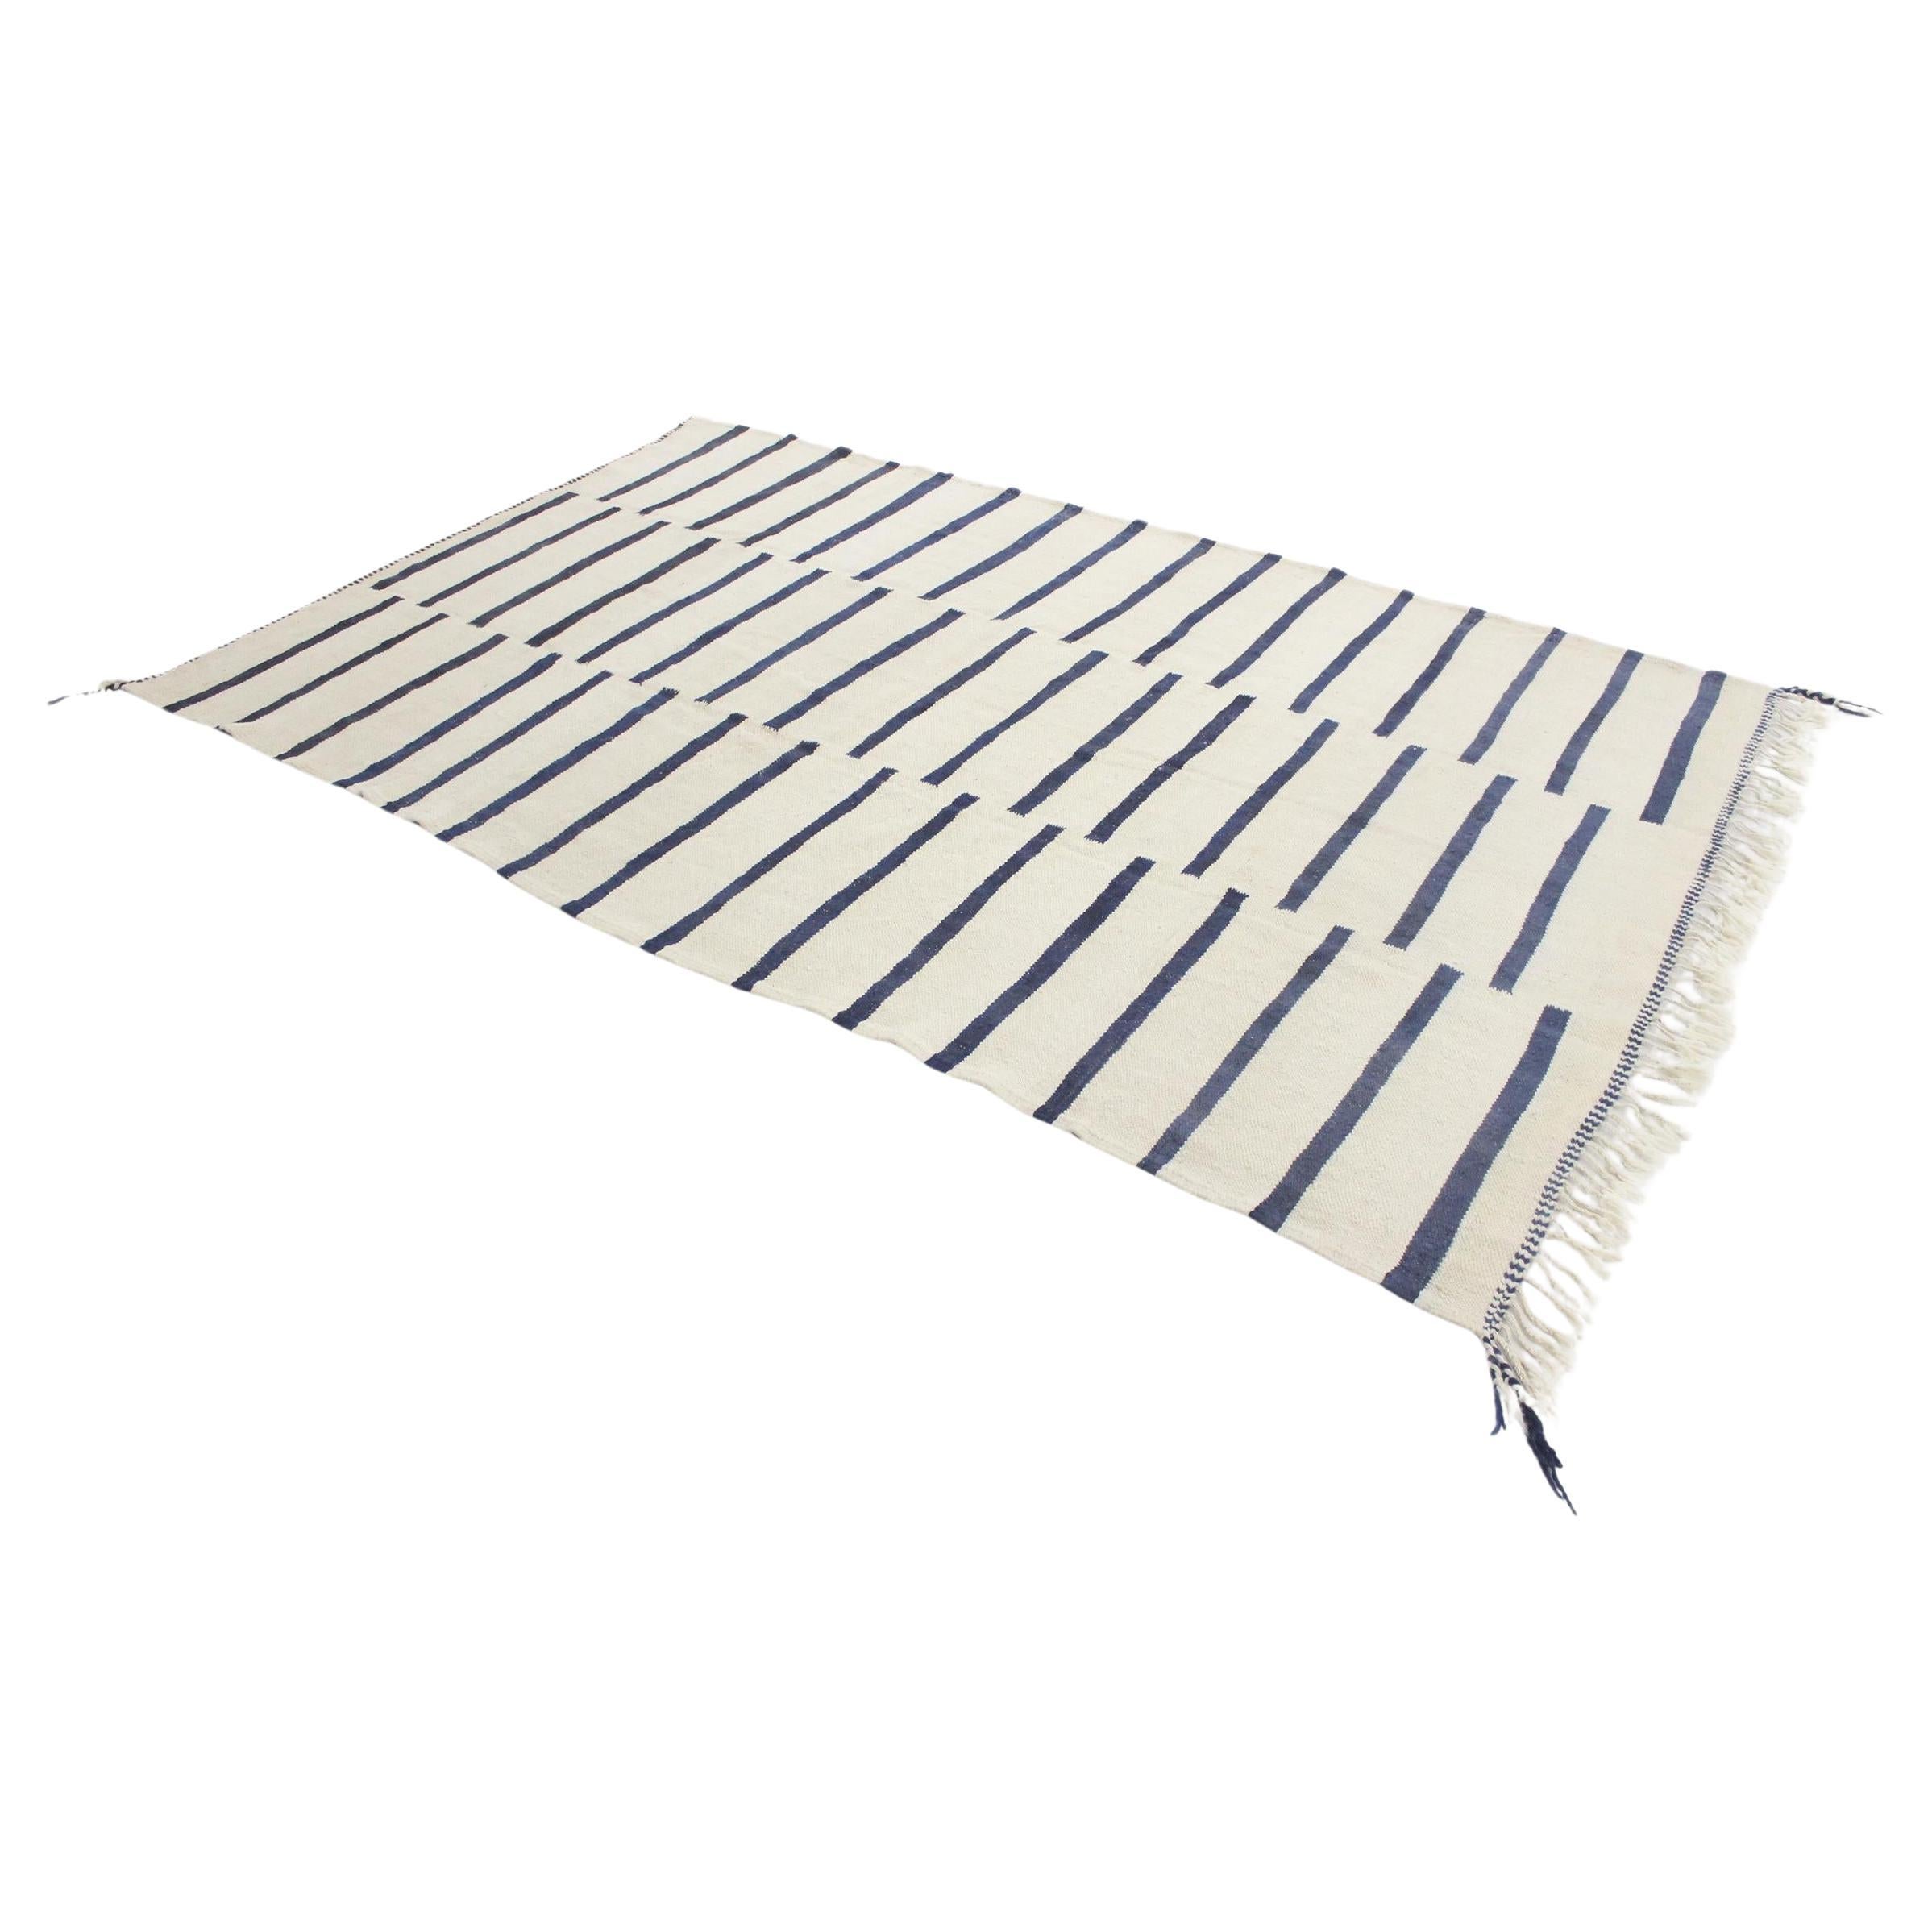 Modern Moroccan kilim rug - Cream/blue - 6.5x10.6feet / 200x323cm For Sale